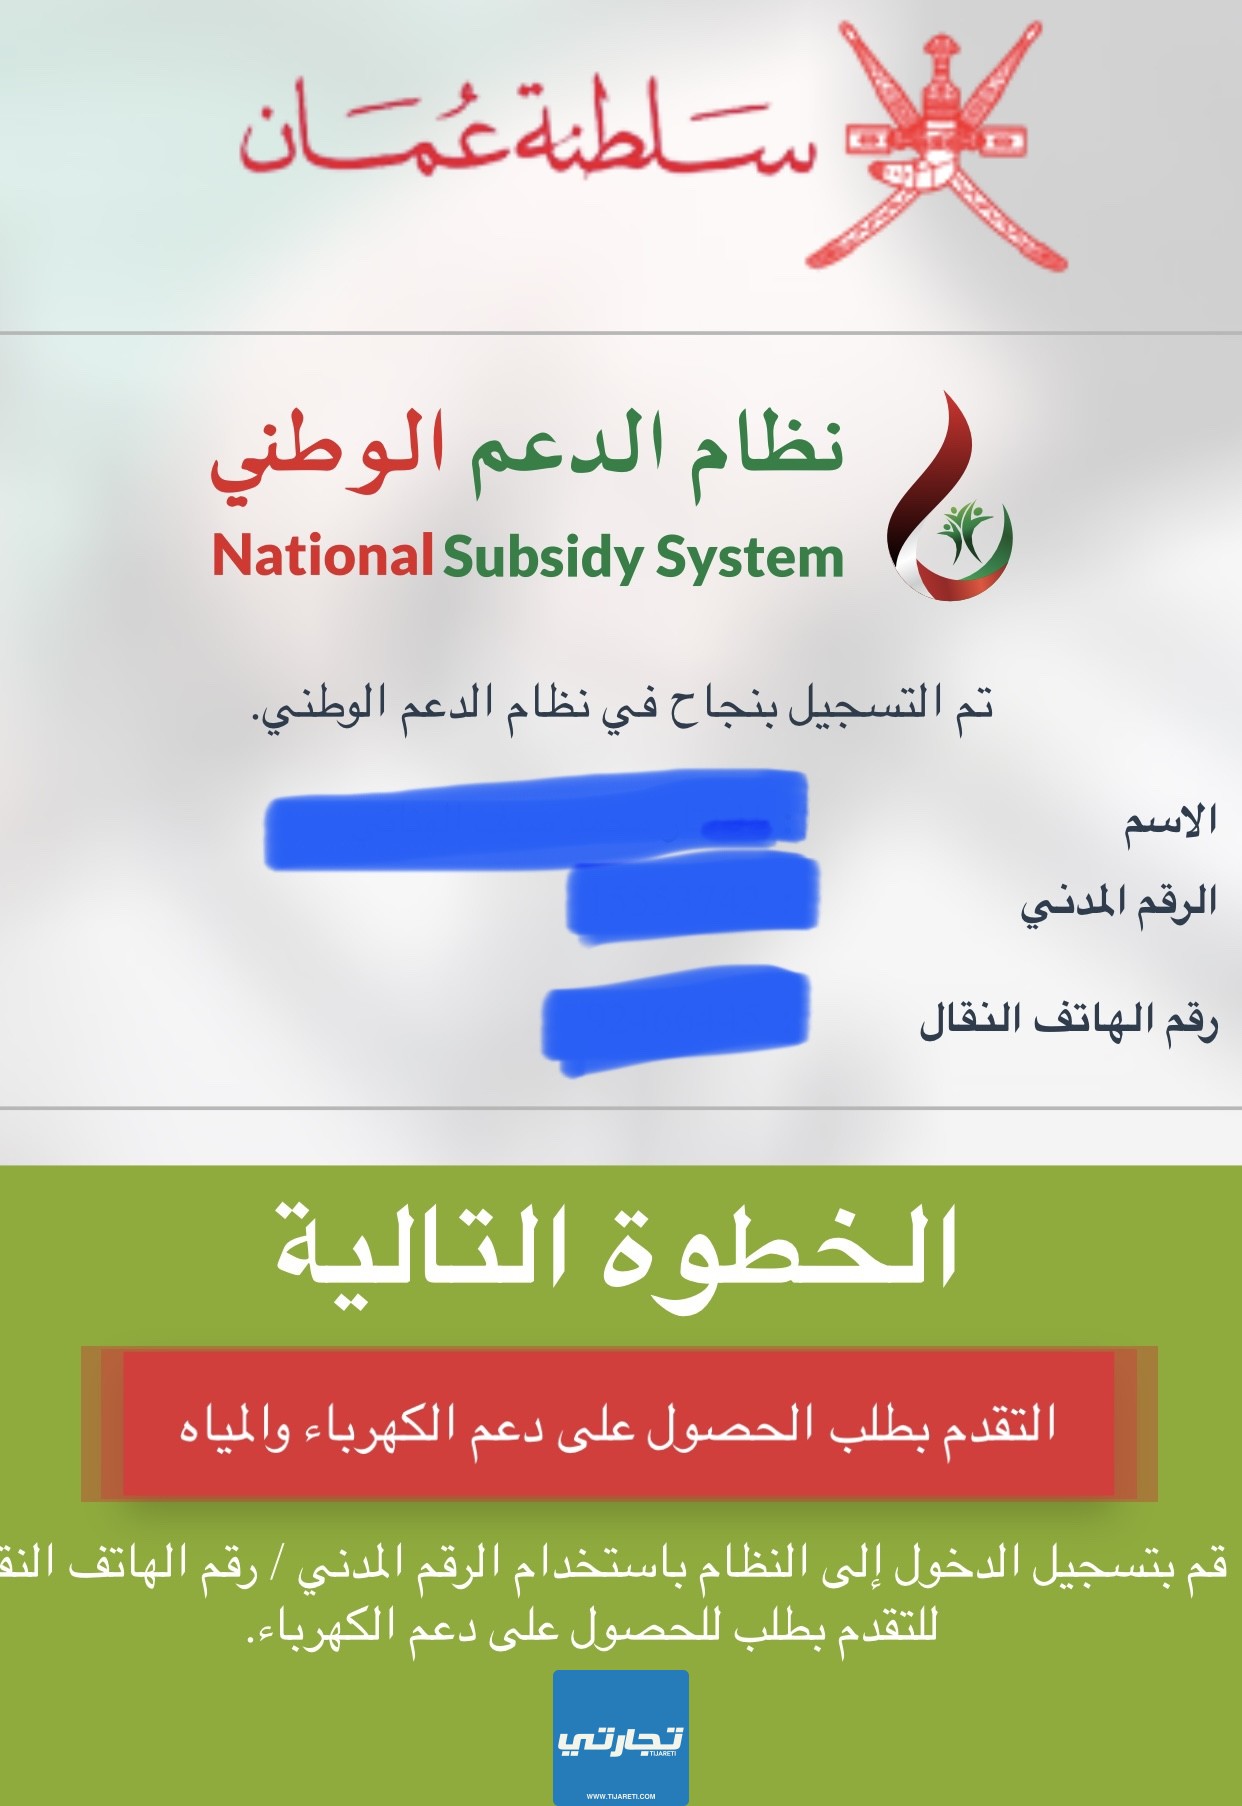 التسجيل في نظام الدعم الوطني للكهرباء والماء في سلطنة عمان